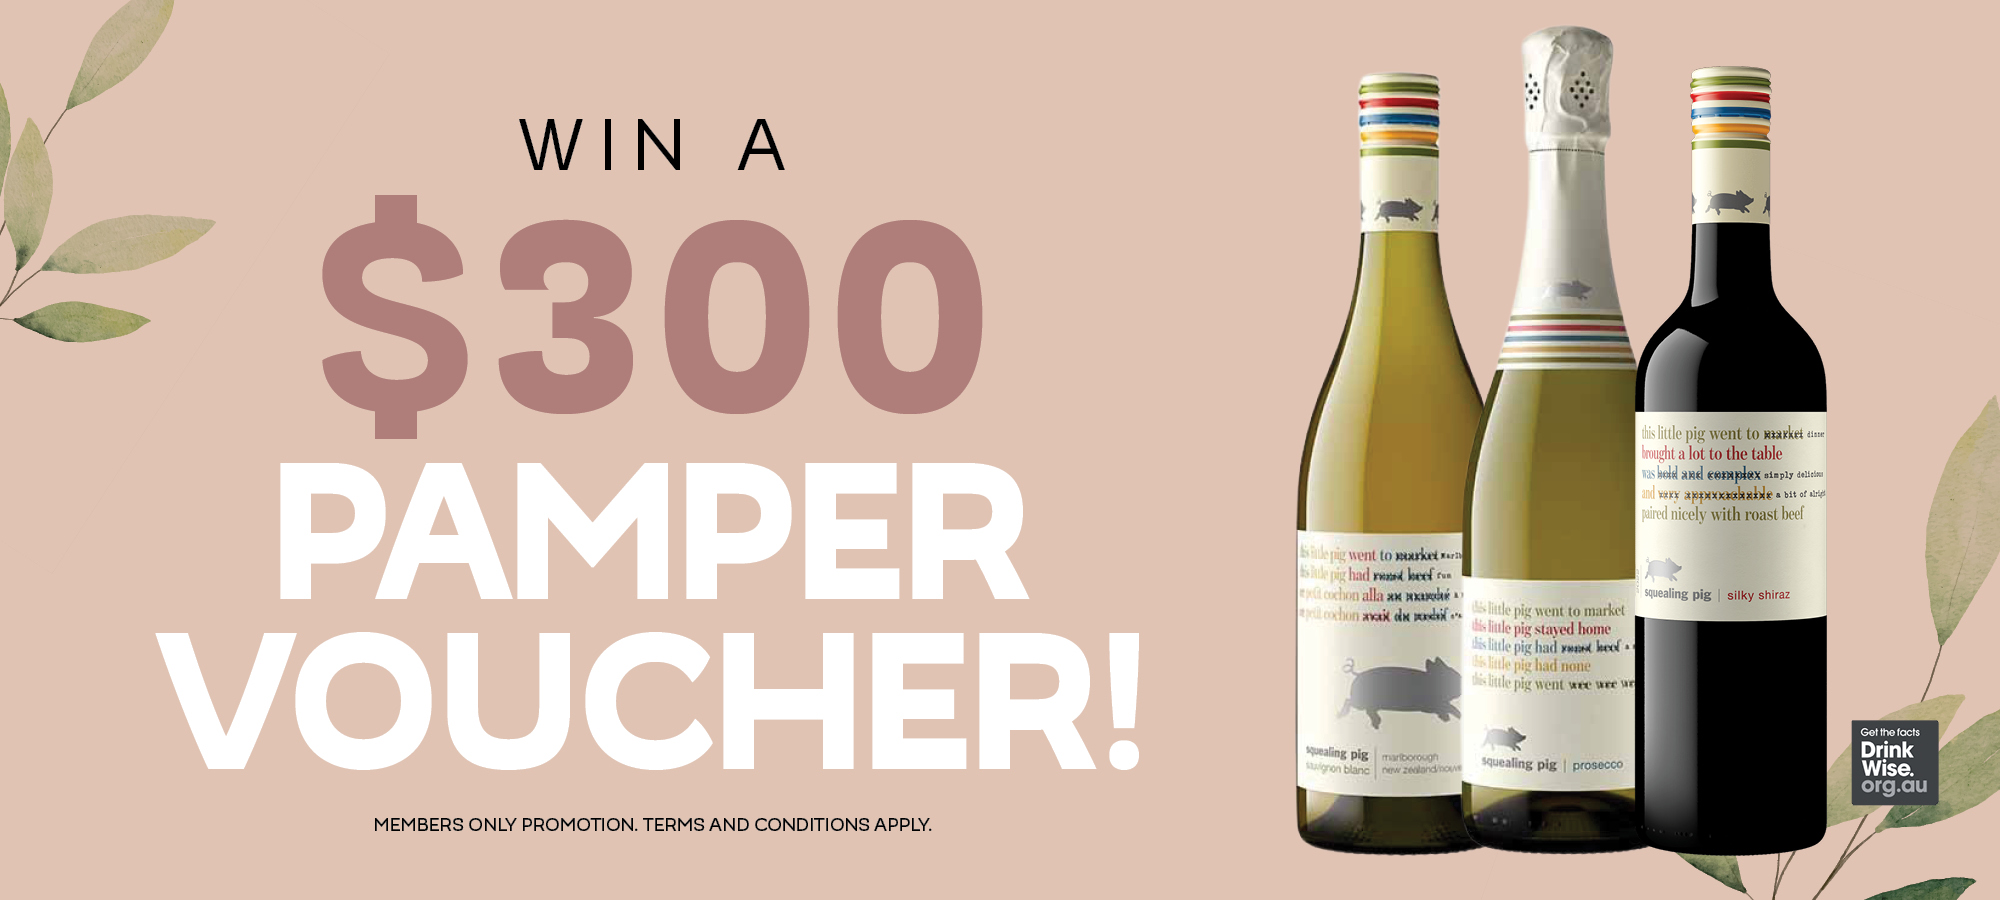 Win Mum a $300 Pamper Voucher!